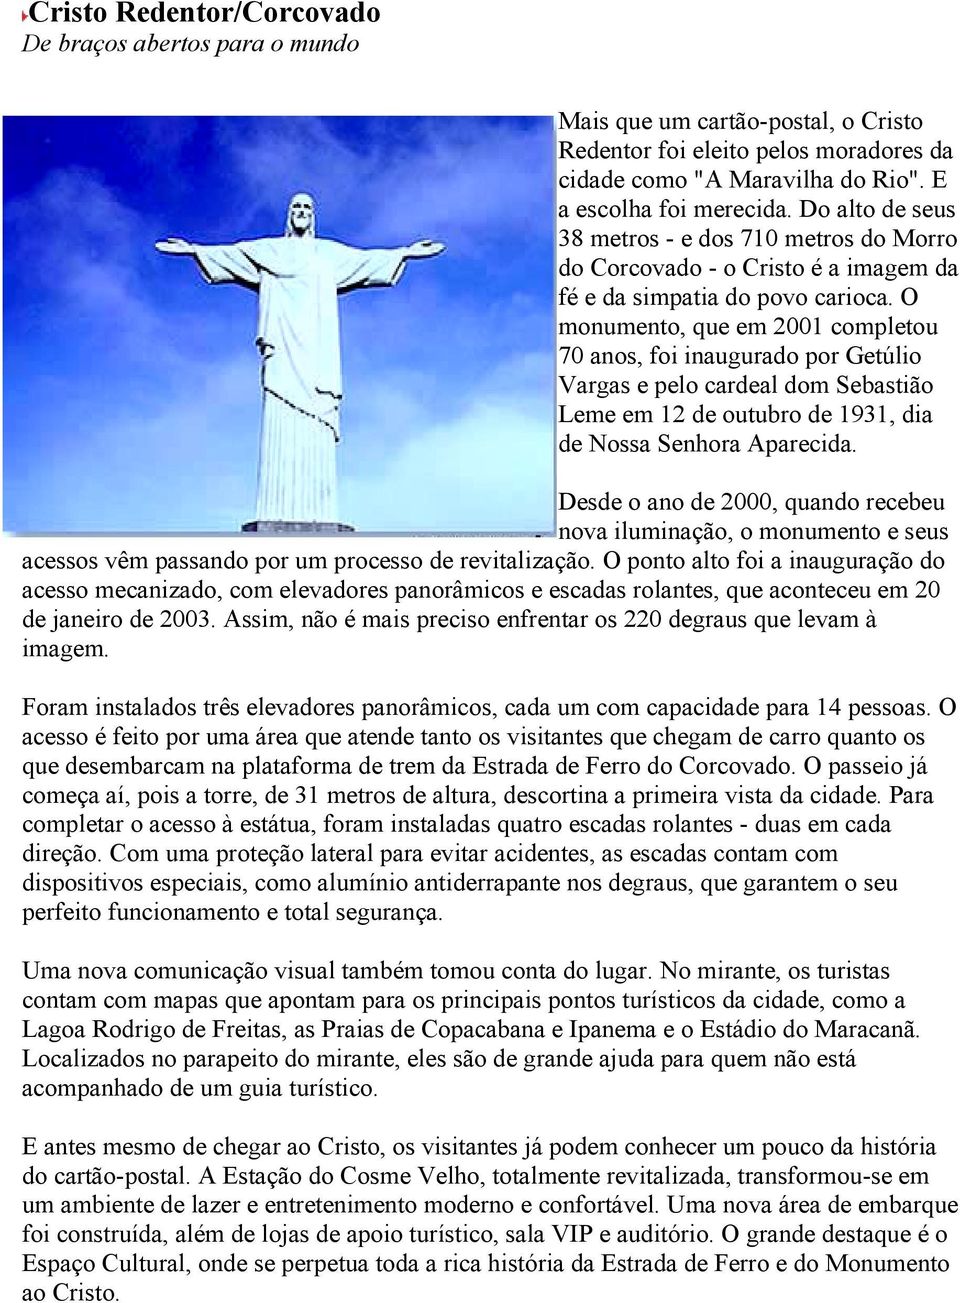 O monumento, que em 2001 completou 70 anos, foi inaugurado por Getúlio Vargas e pelo cardeal dom Sebastião Leme em 12 de outubro de 1931, dia de Nossa Senhora Aparecida.